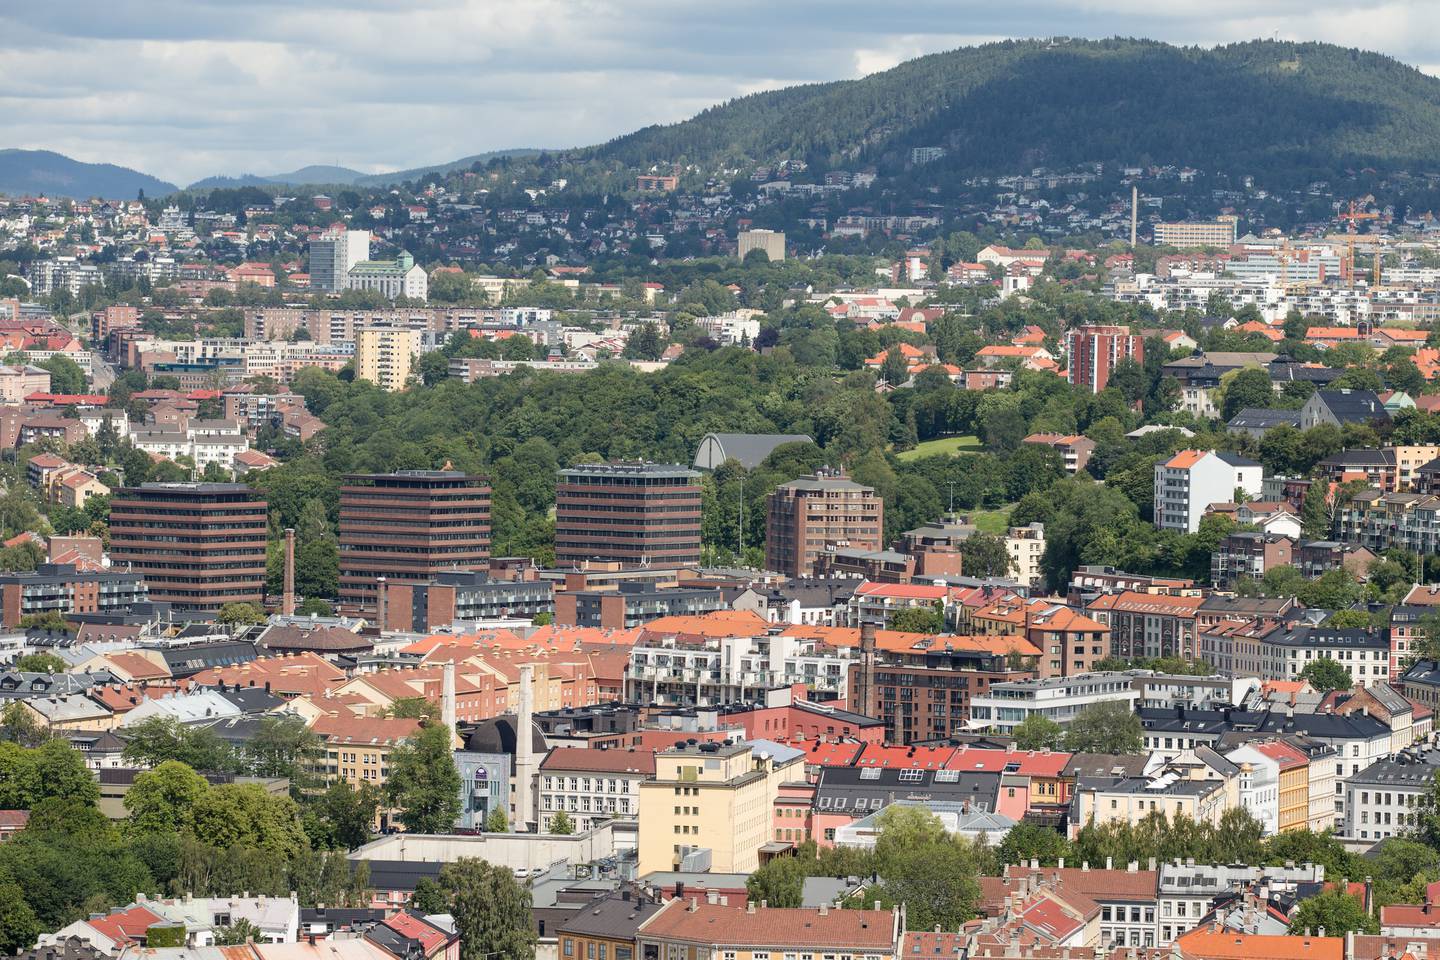 Oslo  20150723.
Oslo med Tøyen midt i bildet og Grefsenåsen øverst fotografert fra Ekebergåsen i juli 2015.
Foto: Audun Braastad / NTB